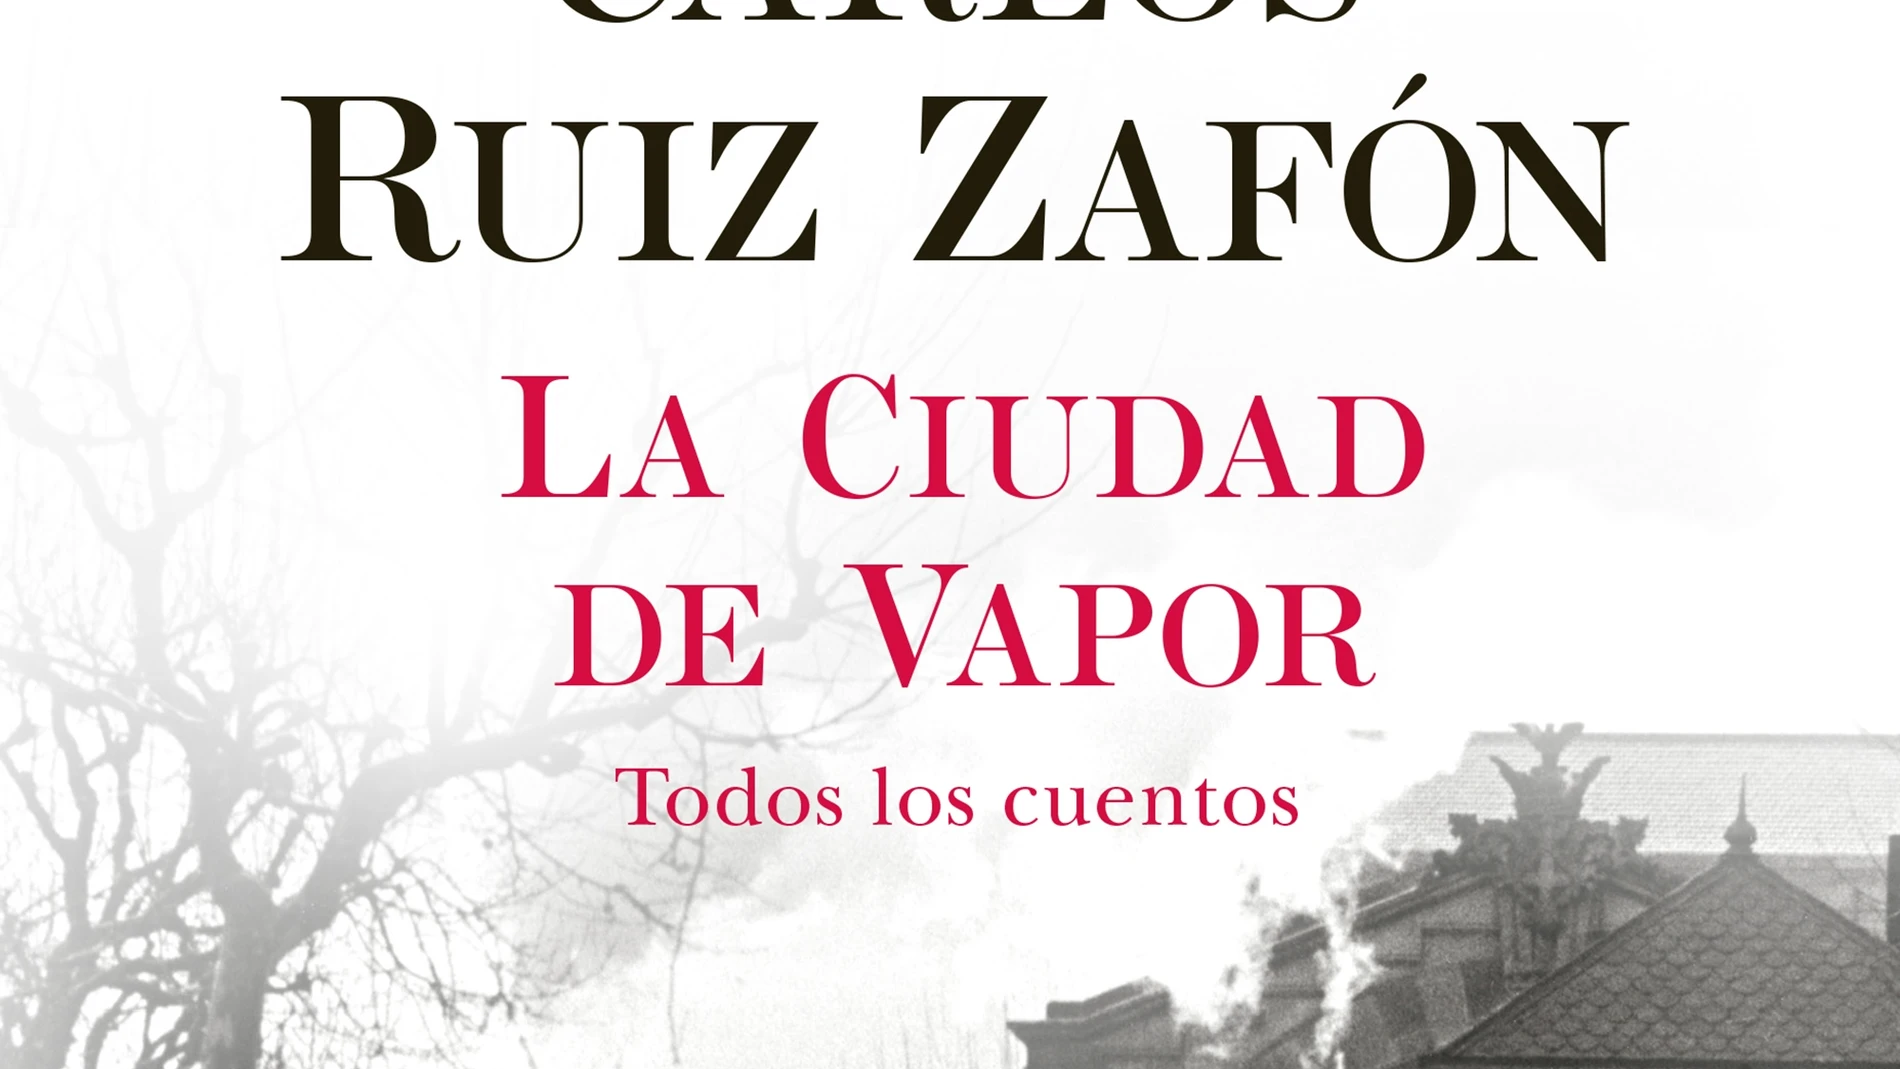 Portada de "La ciudad de vapor", el libro póstumo de Carlos Ruiz Zafón